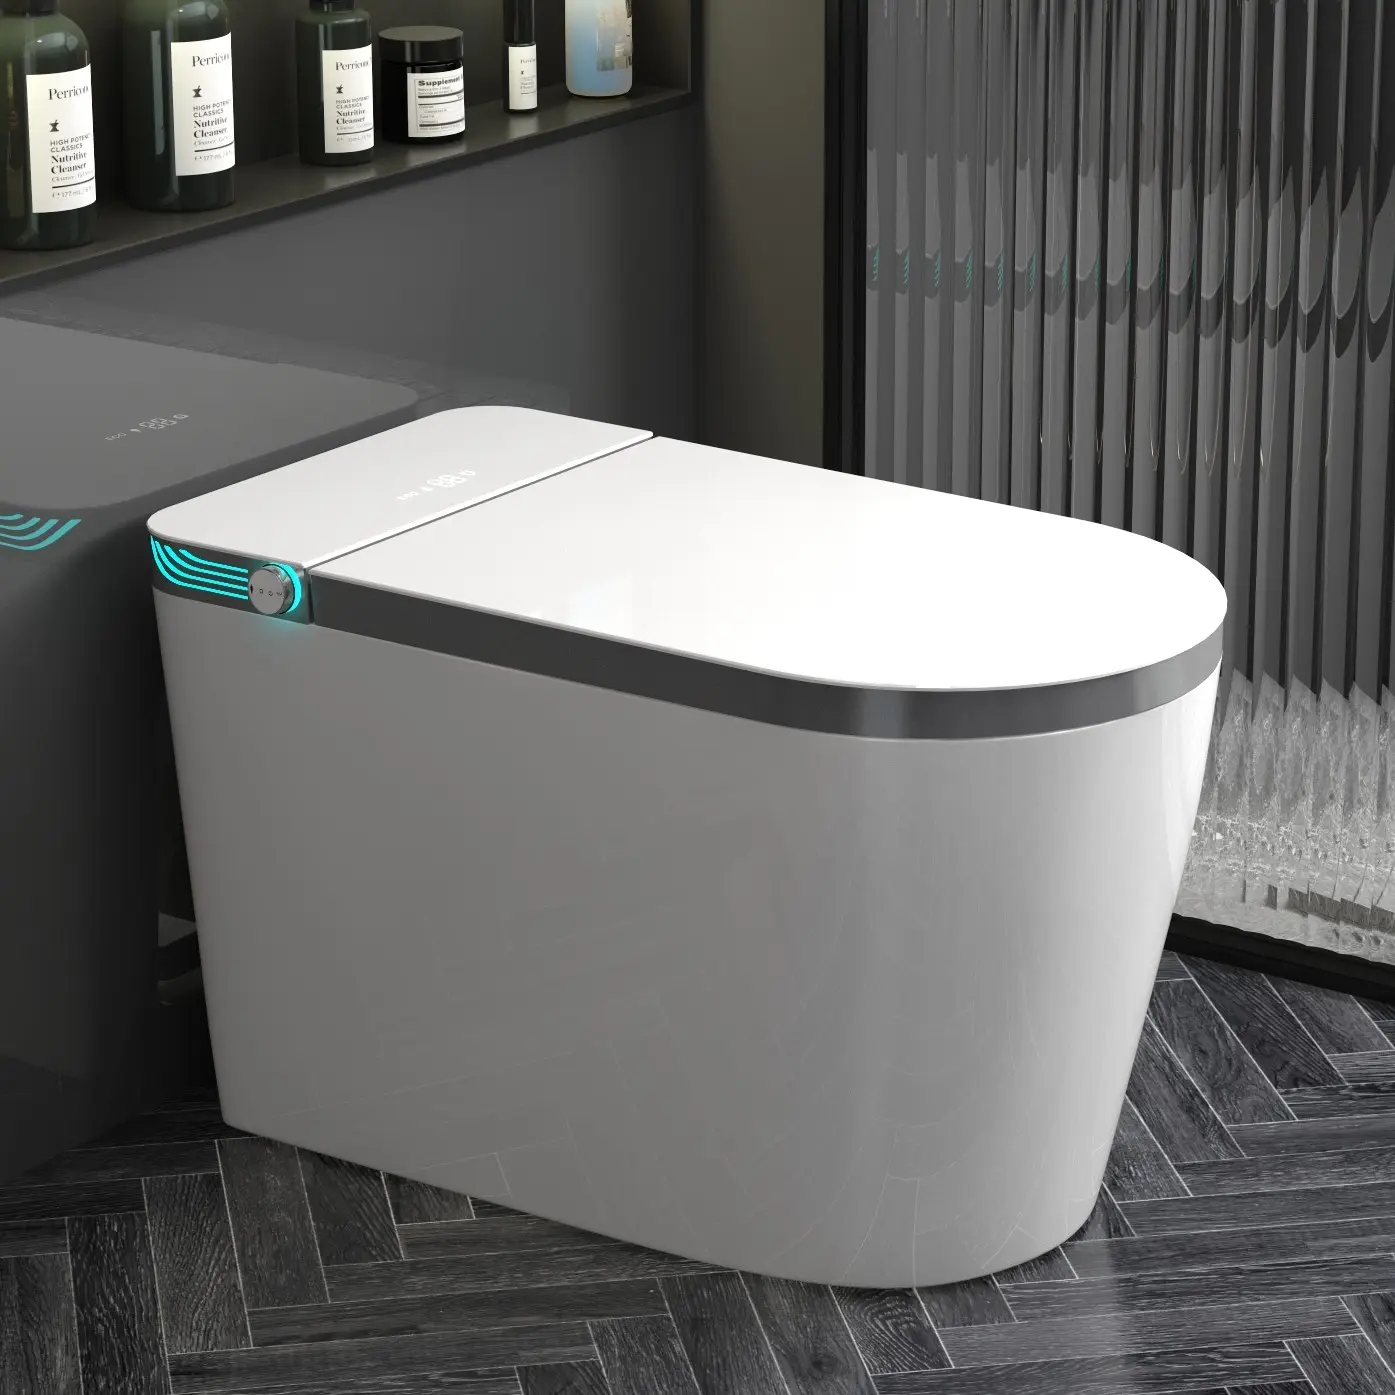 Inteligente porcelana wc piso montado armário de água vaso sanitário banheiro automático cerâmica uma peça sifão banheiro inteligente